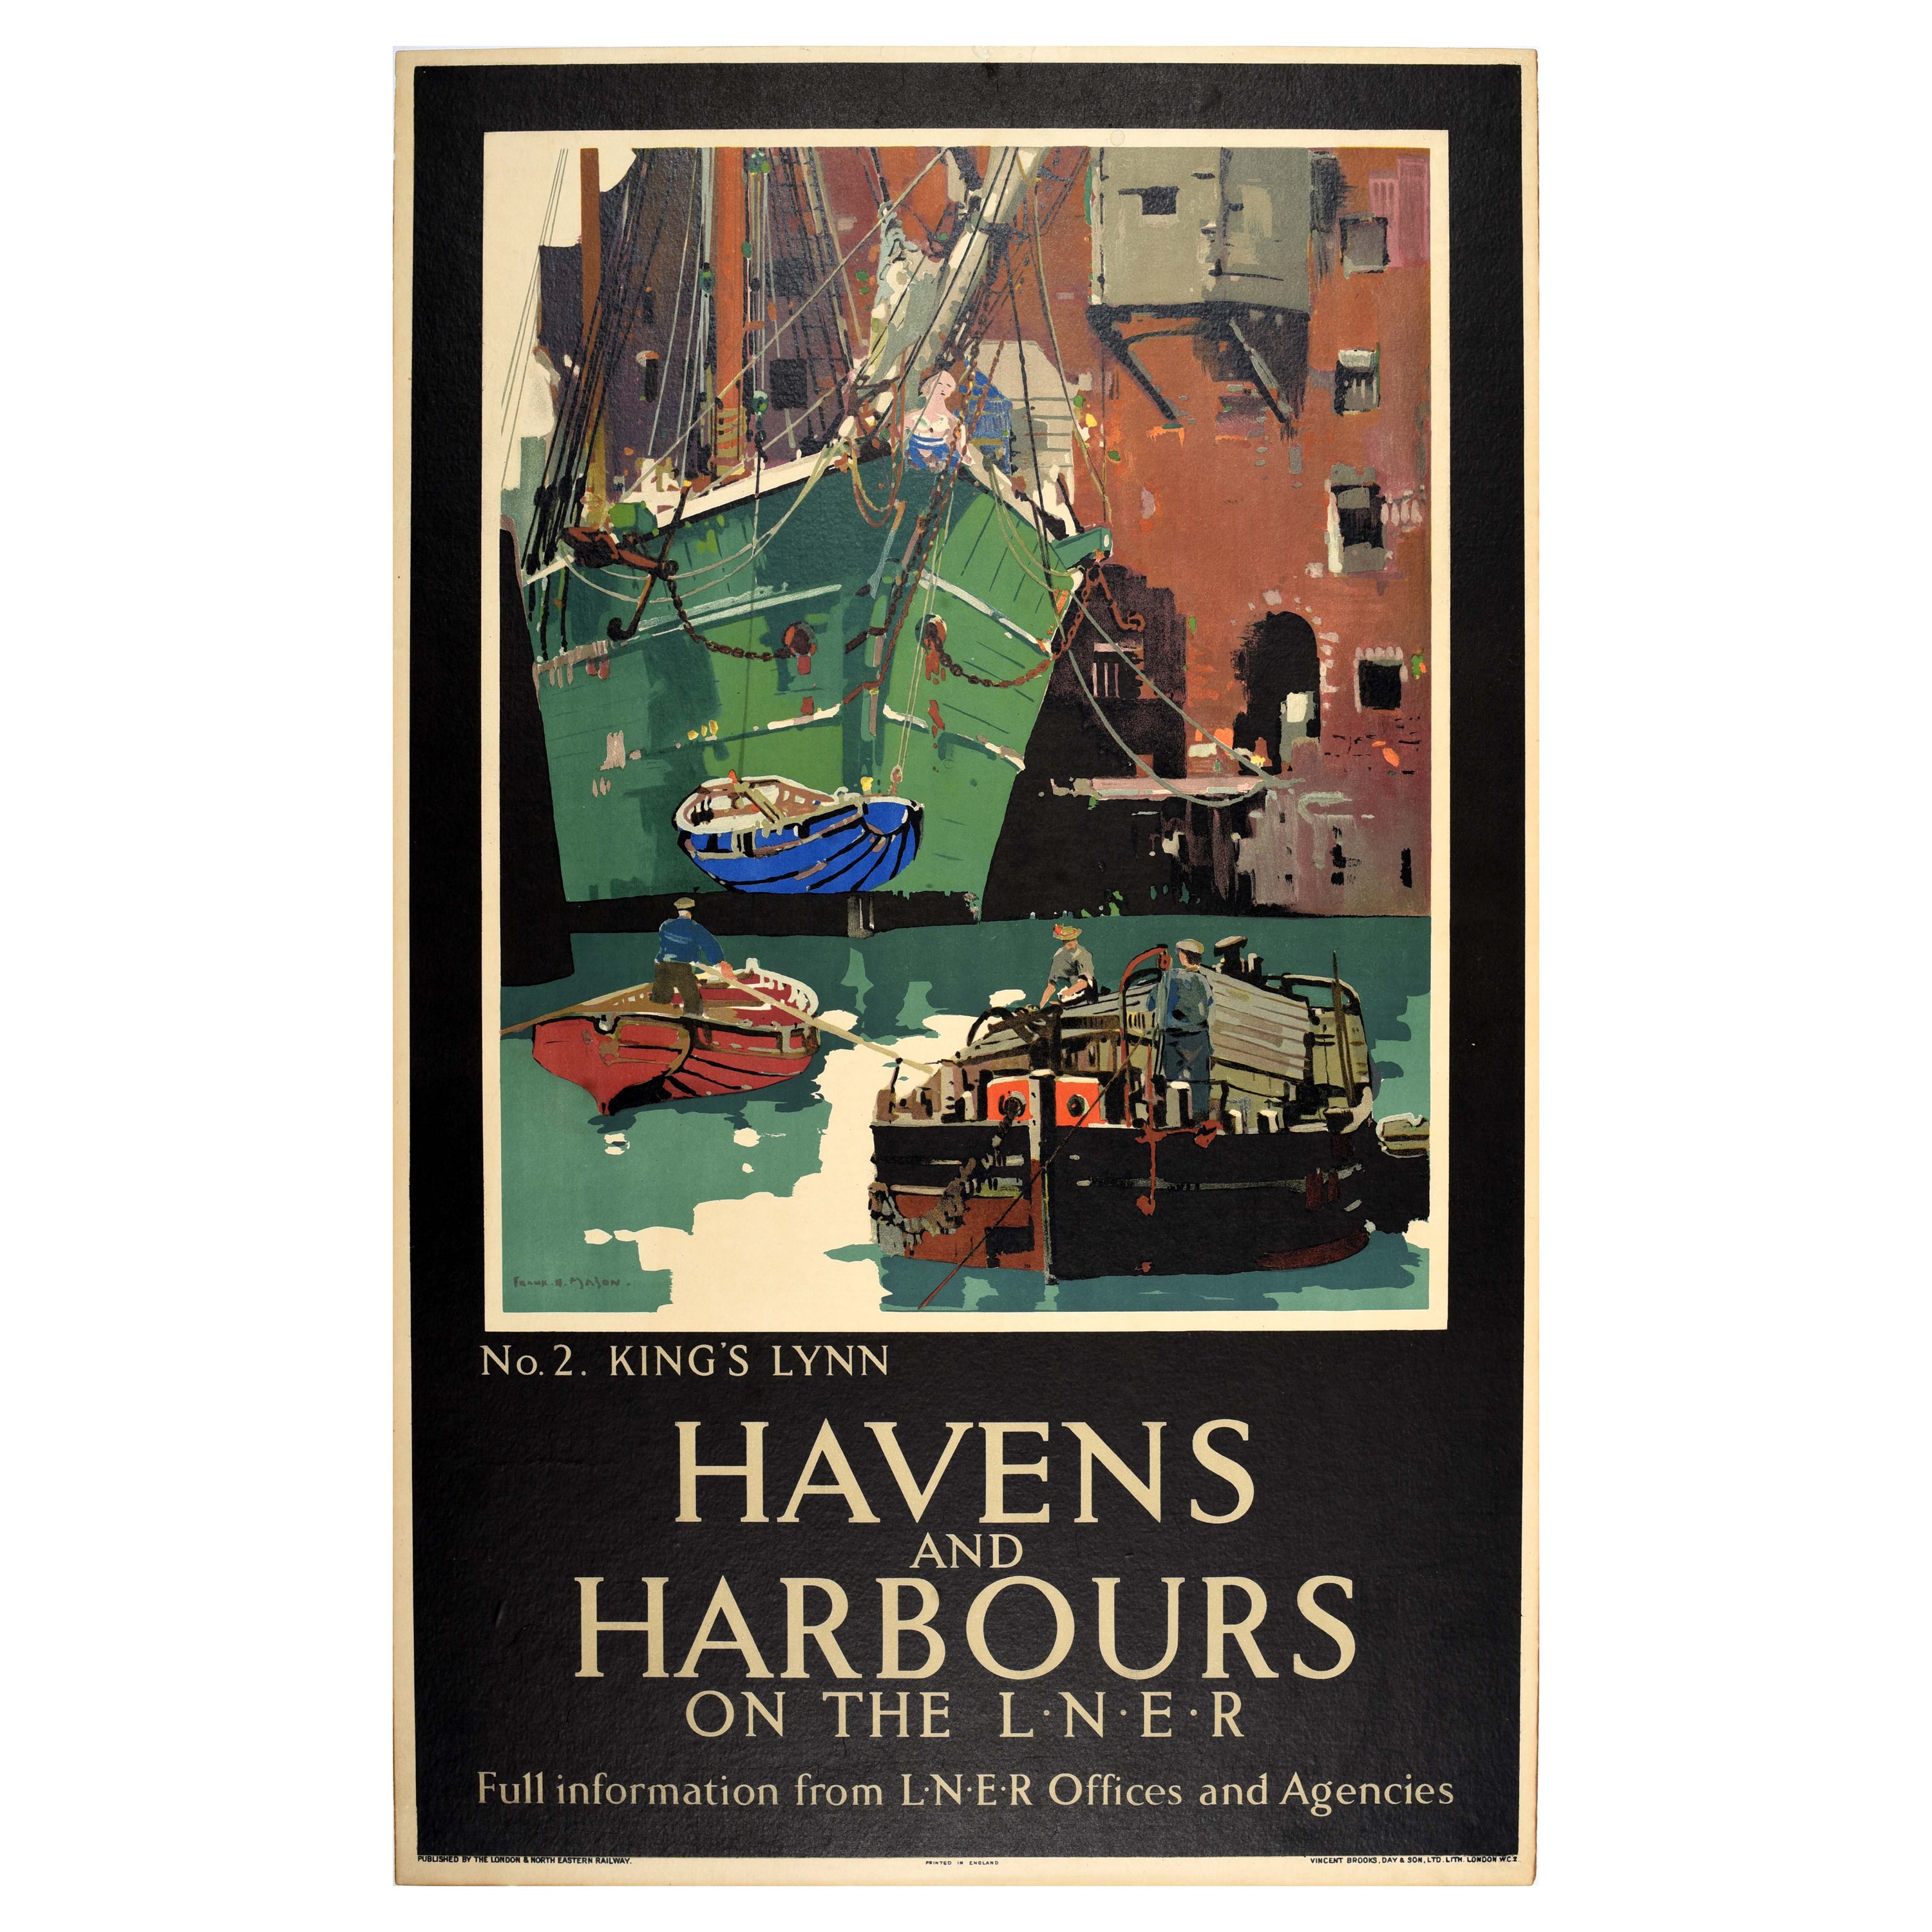 Original Vintage LNER Train Travel Poster Kings Lynn Norfolk Havens And Harbours For Sale